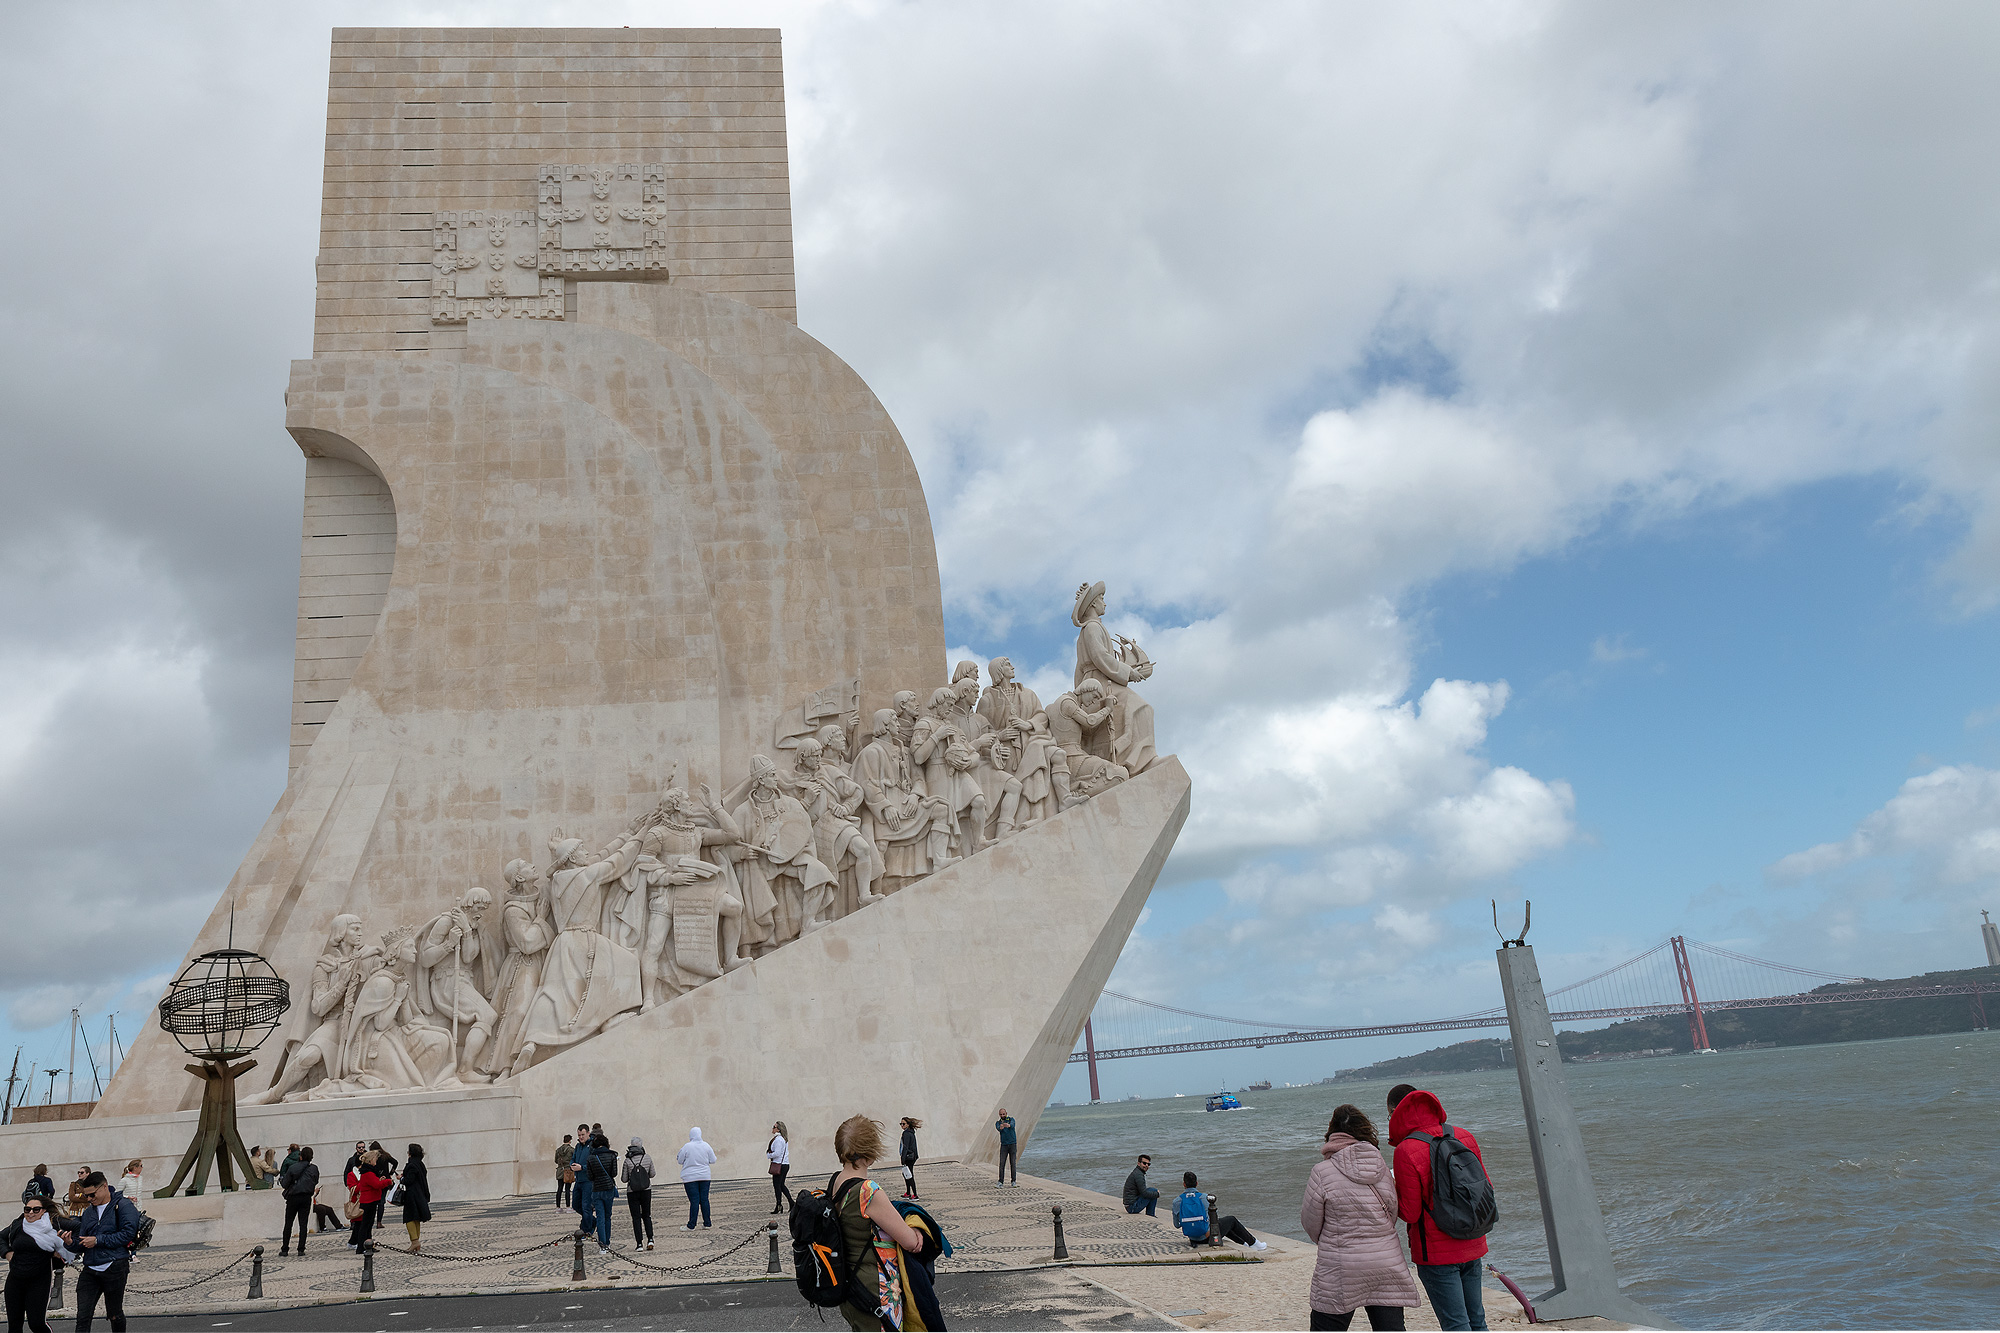 Padrão dos Descobrimentos (Denkmal der Entdeckungen) in Belém erinnert kritiklos an den portugiesischen Kolonialismus 